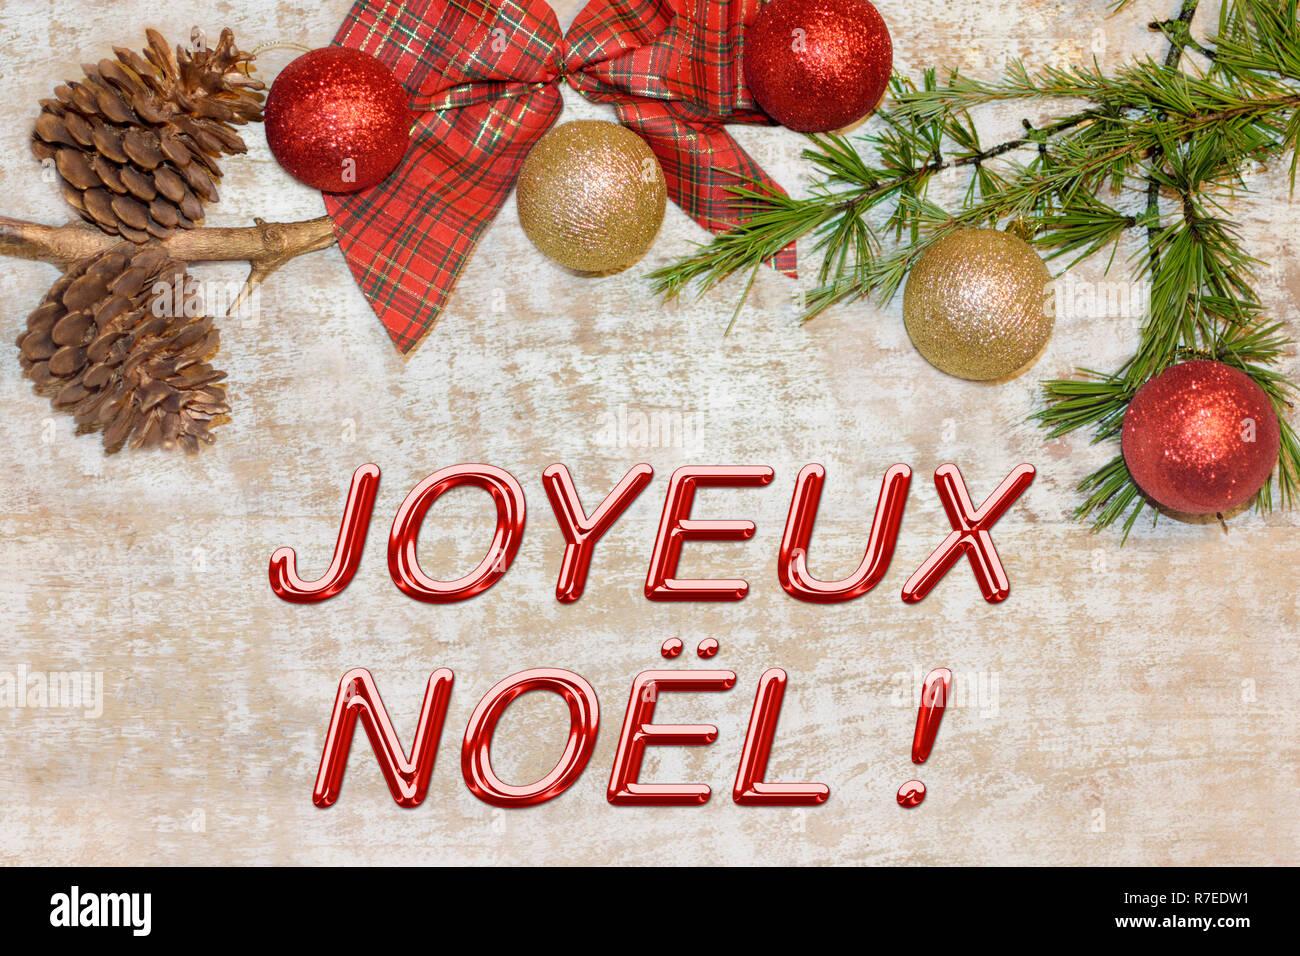 Weihnachten Zusammensetzung Rahmen für die glückwunschkarte. "Joyeux Noël" Stockfoto